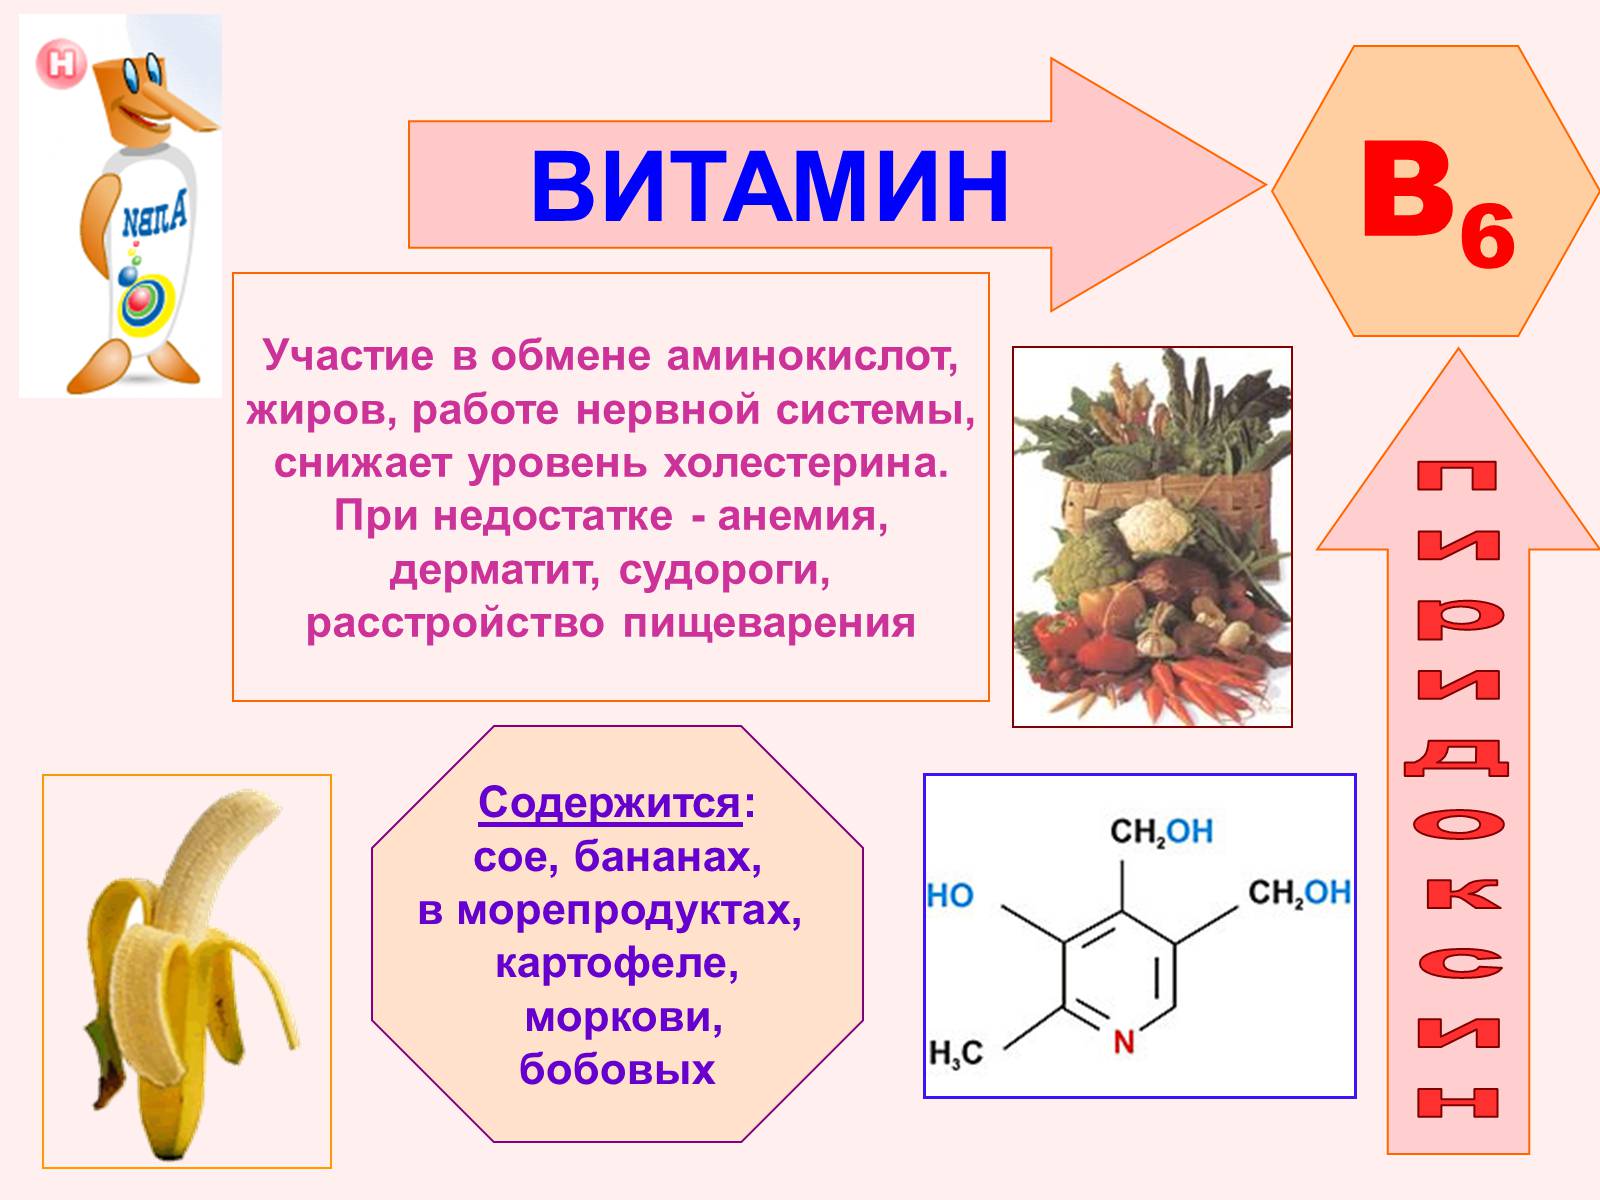 Б6 побочки. Роль витамина б6. Название болезни витамина b6. Витамин b6 строение. Витамин в6 физиологическое название.